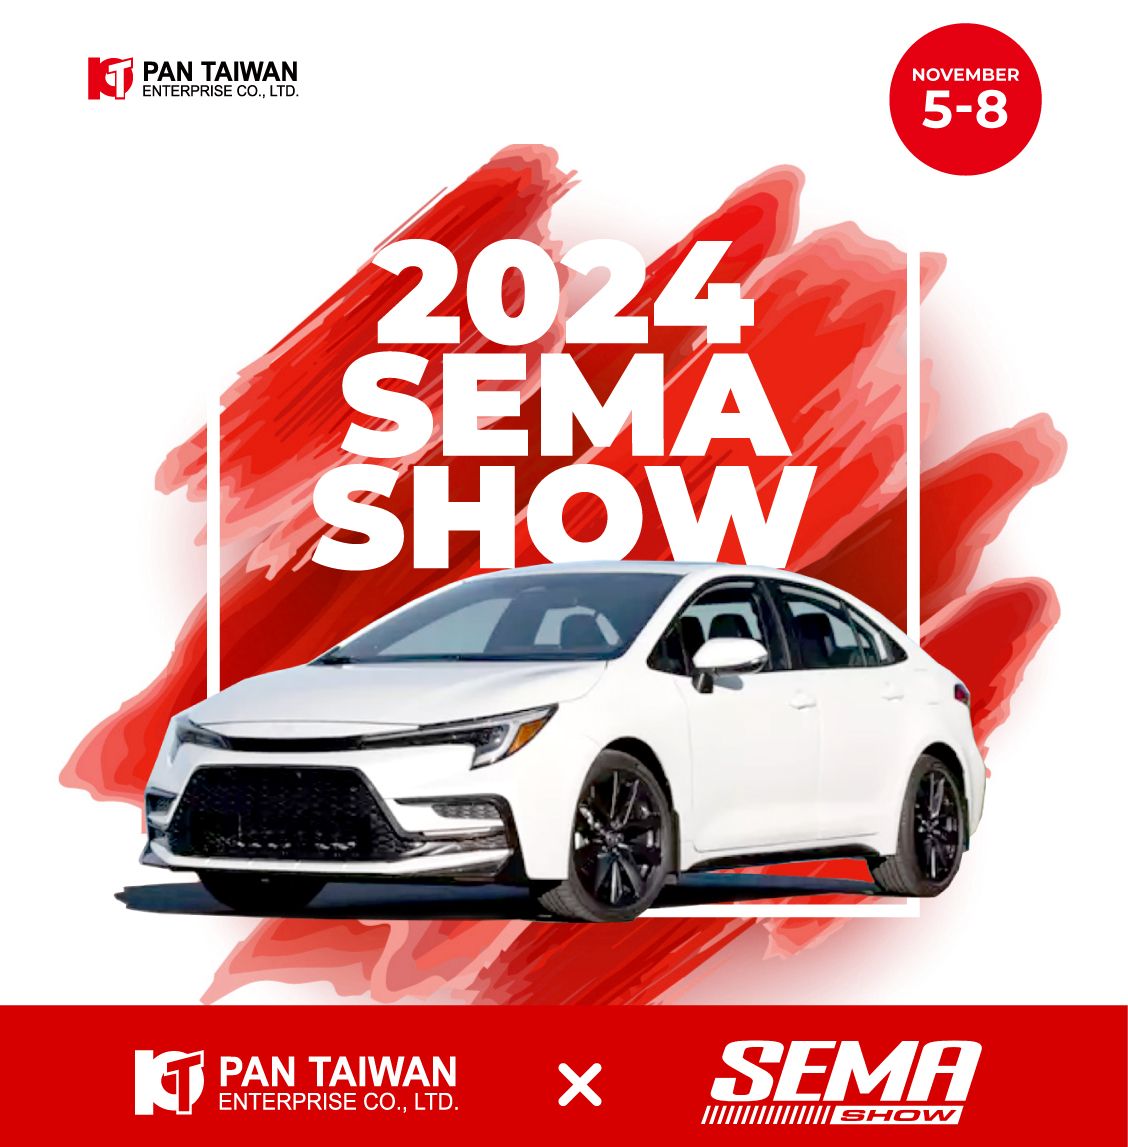 Pan Taiwan, ведущий производитель автозапчастей, базирующийся на Тайване, с радостью сообщает, что мы будем демонстрировать наши инновационные продукты на выставке SEMA в Лас-Вегасе с 5 по 8 ноября 2024 года.